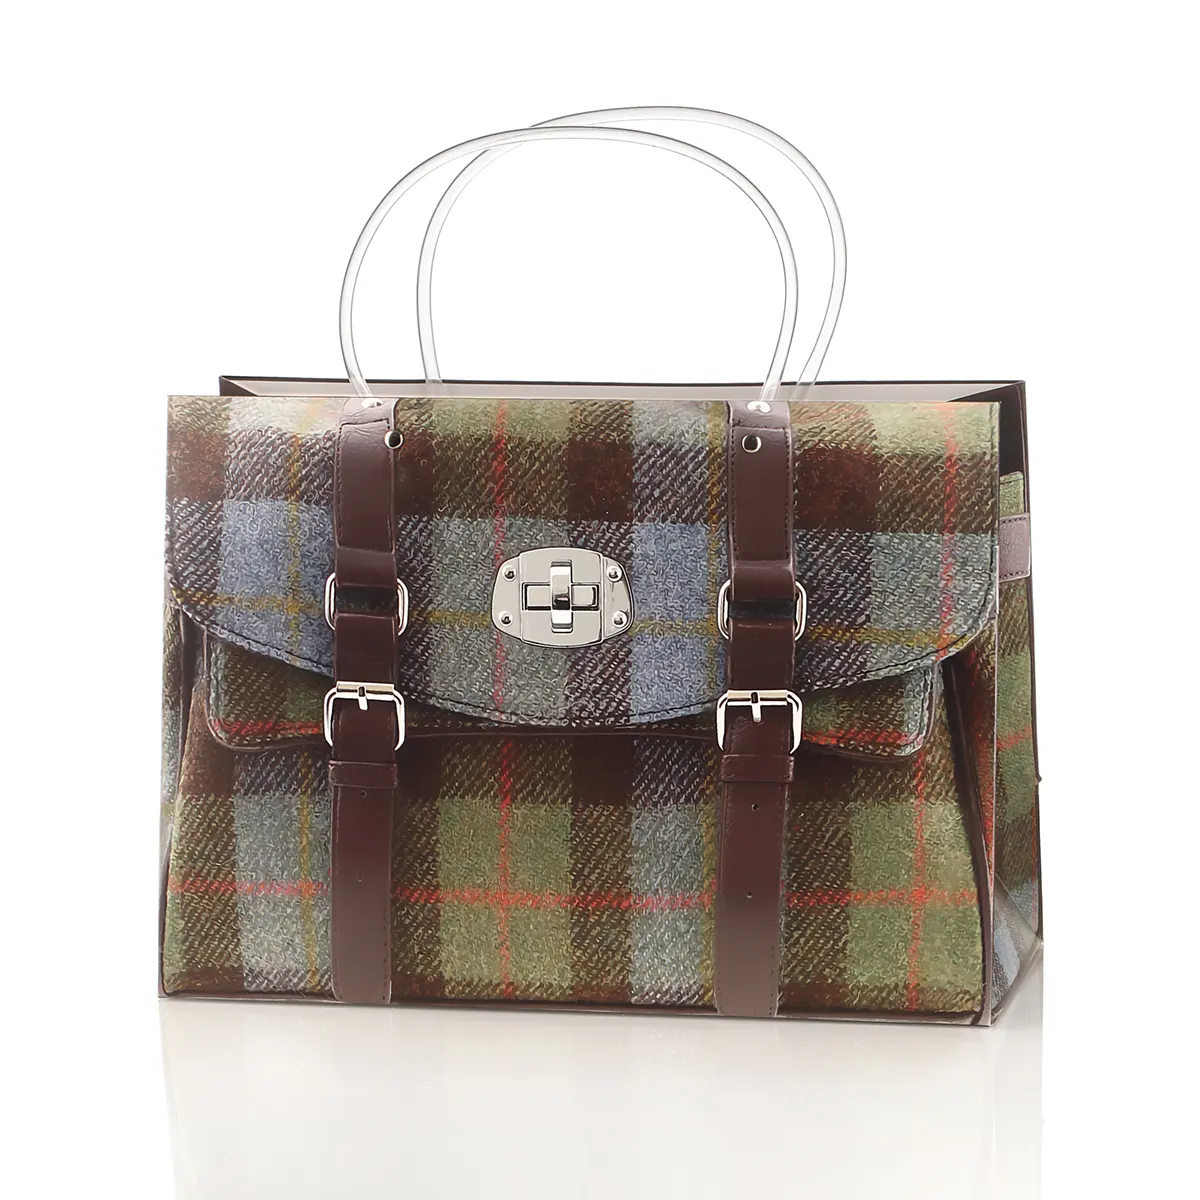 McLeod Tartan Shopping Bag - schottischer Karomuster Einkaufstasche aus Papier